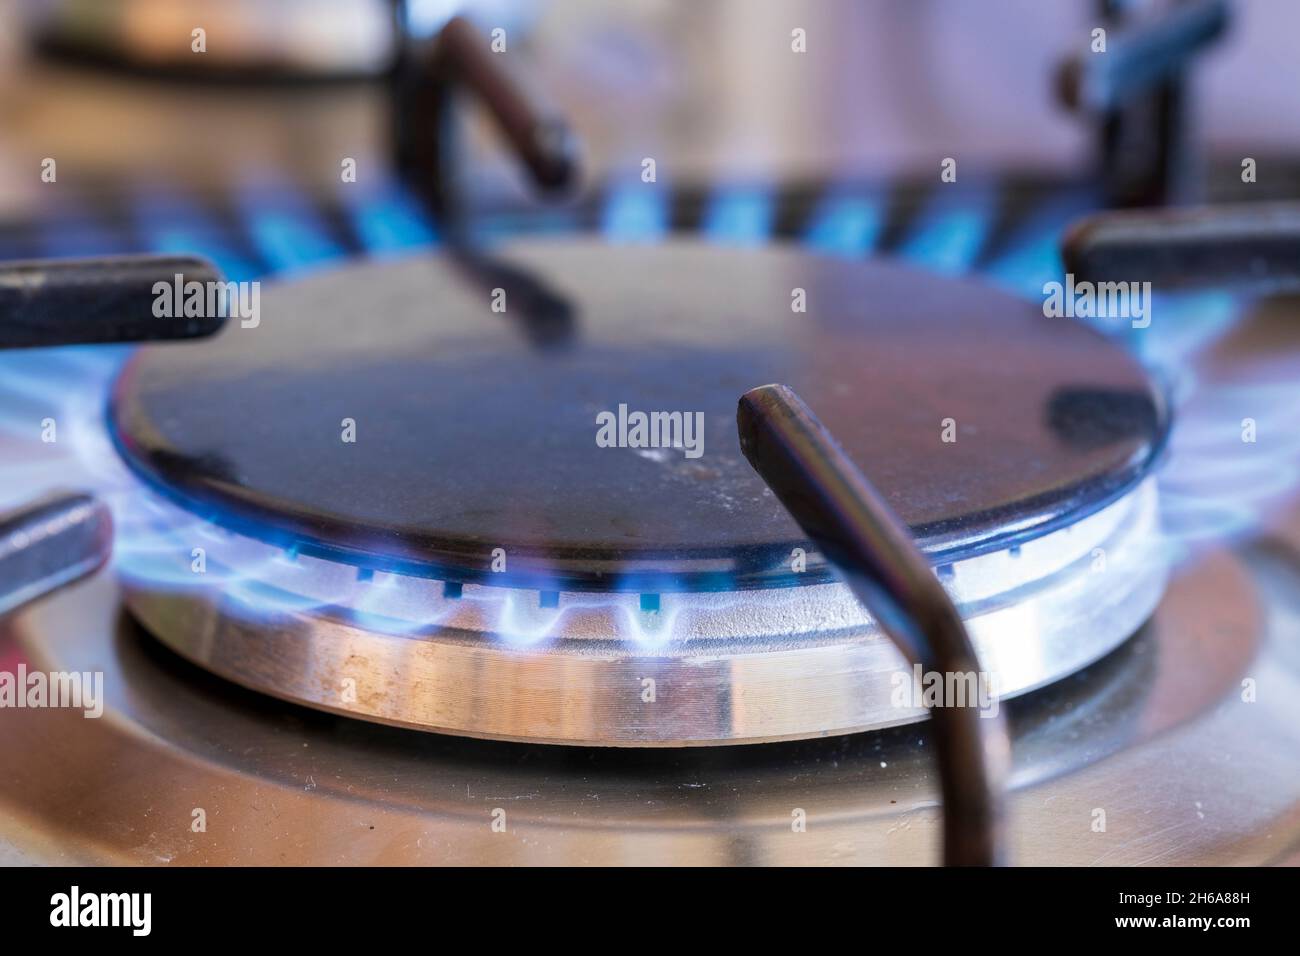 Anneau à gaz allumé sur la table de cuisson à gaz.Anneau circulaire gris recouvert d'un dessus noir en fonte, flammes bleues provenant des évents à gaz sur le côté de l'anneau. Banque D'Images